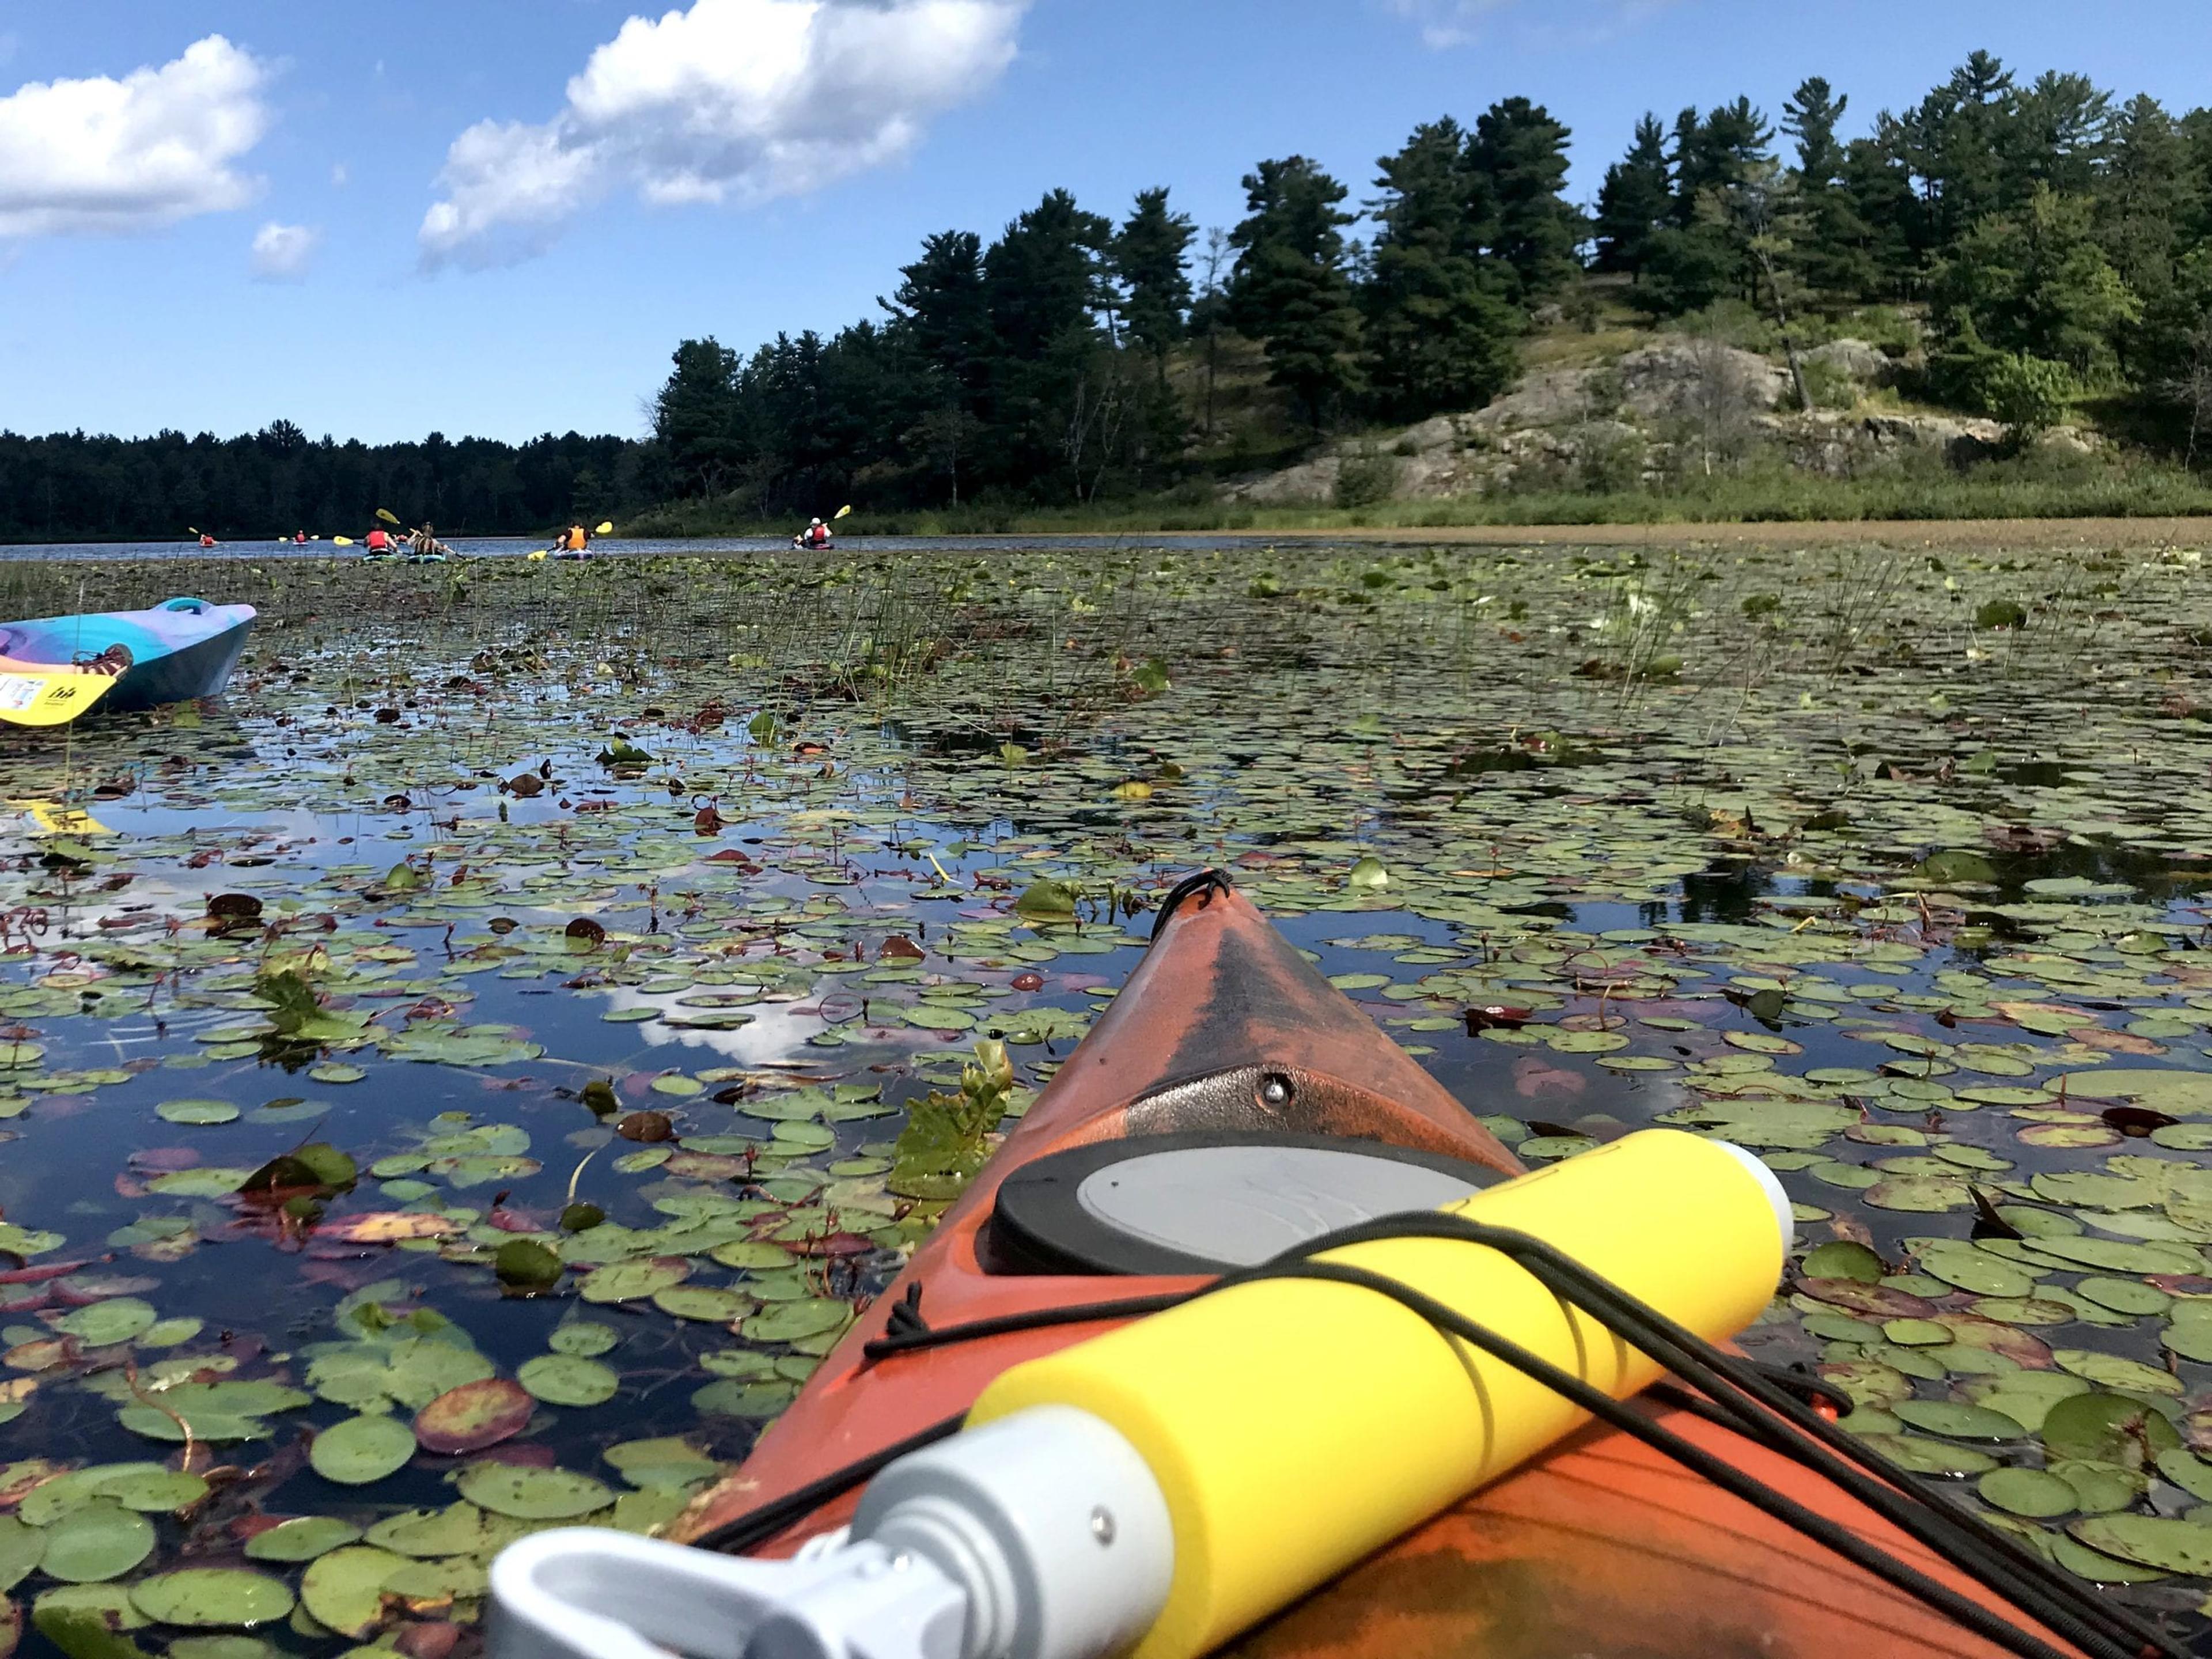 Great Lakes residents kayaking